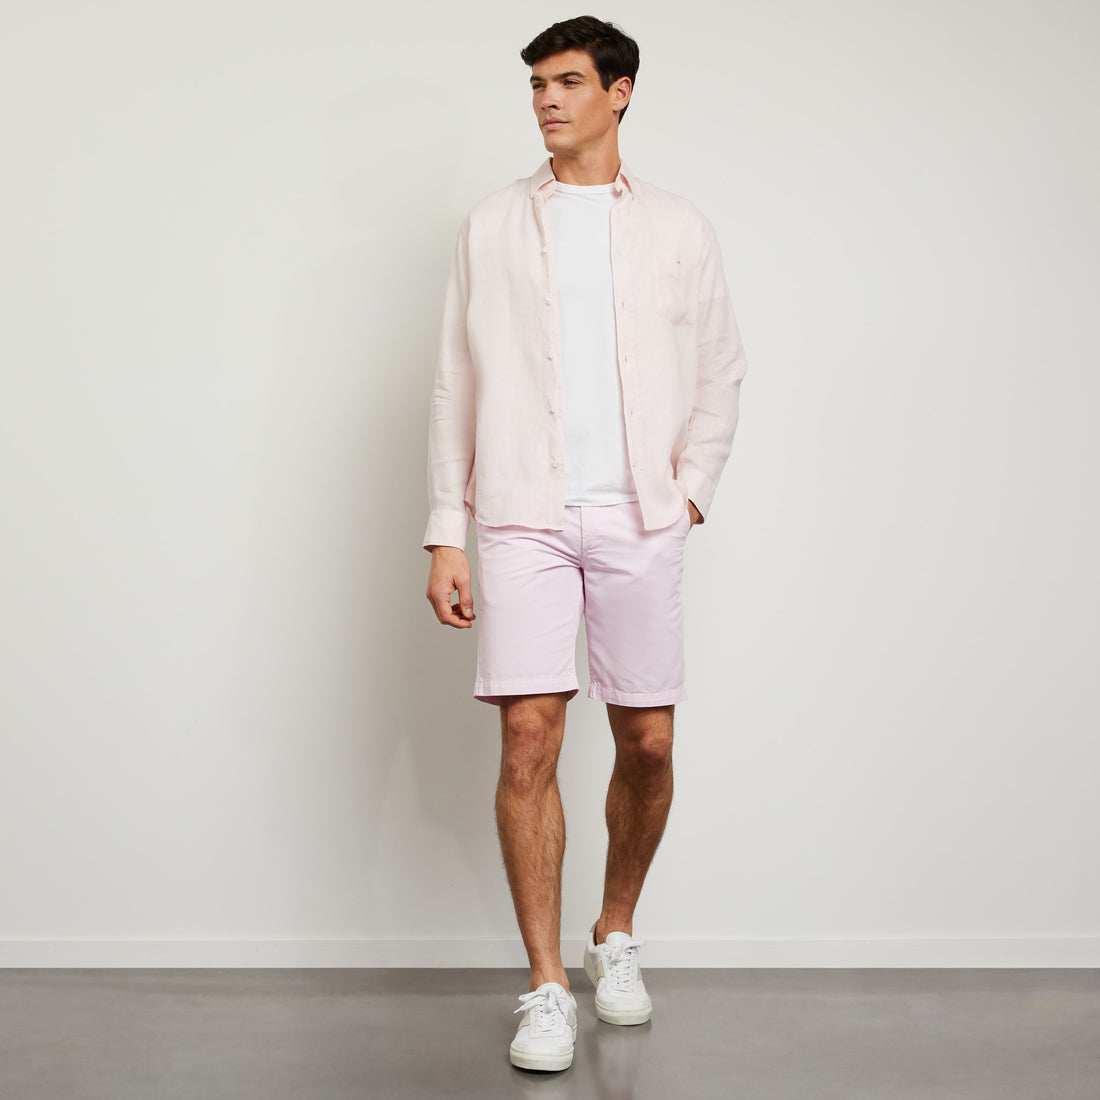 Plain Light Pink Linen Shirt